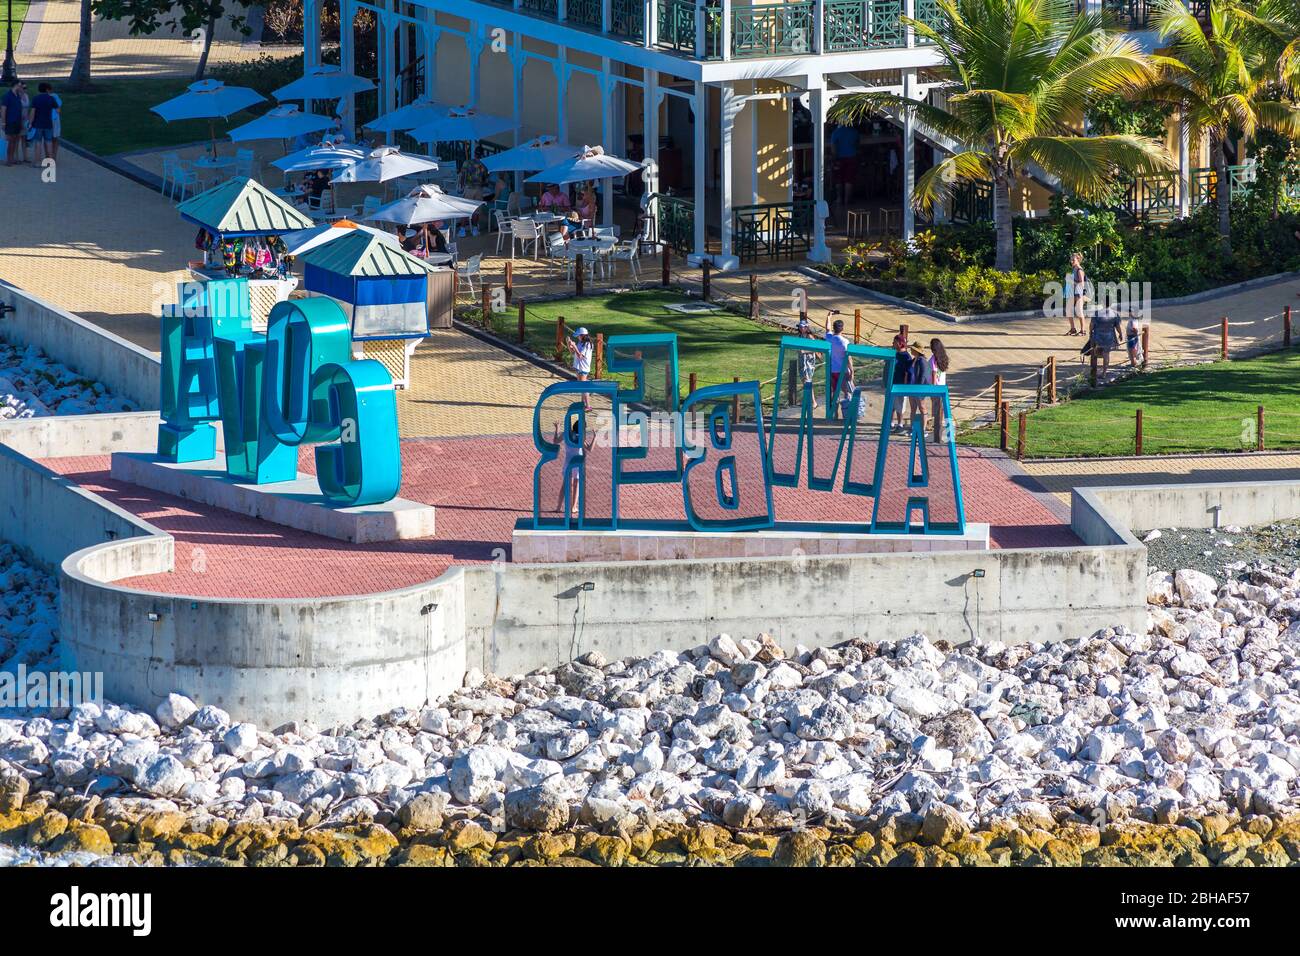 Schriftzug Amber Cove, Aussicht vom Kreuzfahrtschiff, Touristenzentrum, Amber Cove Cruise Terminal, Hafen, Maimón, Dominikanische Republik, Große Anti Stock Photo